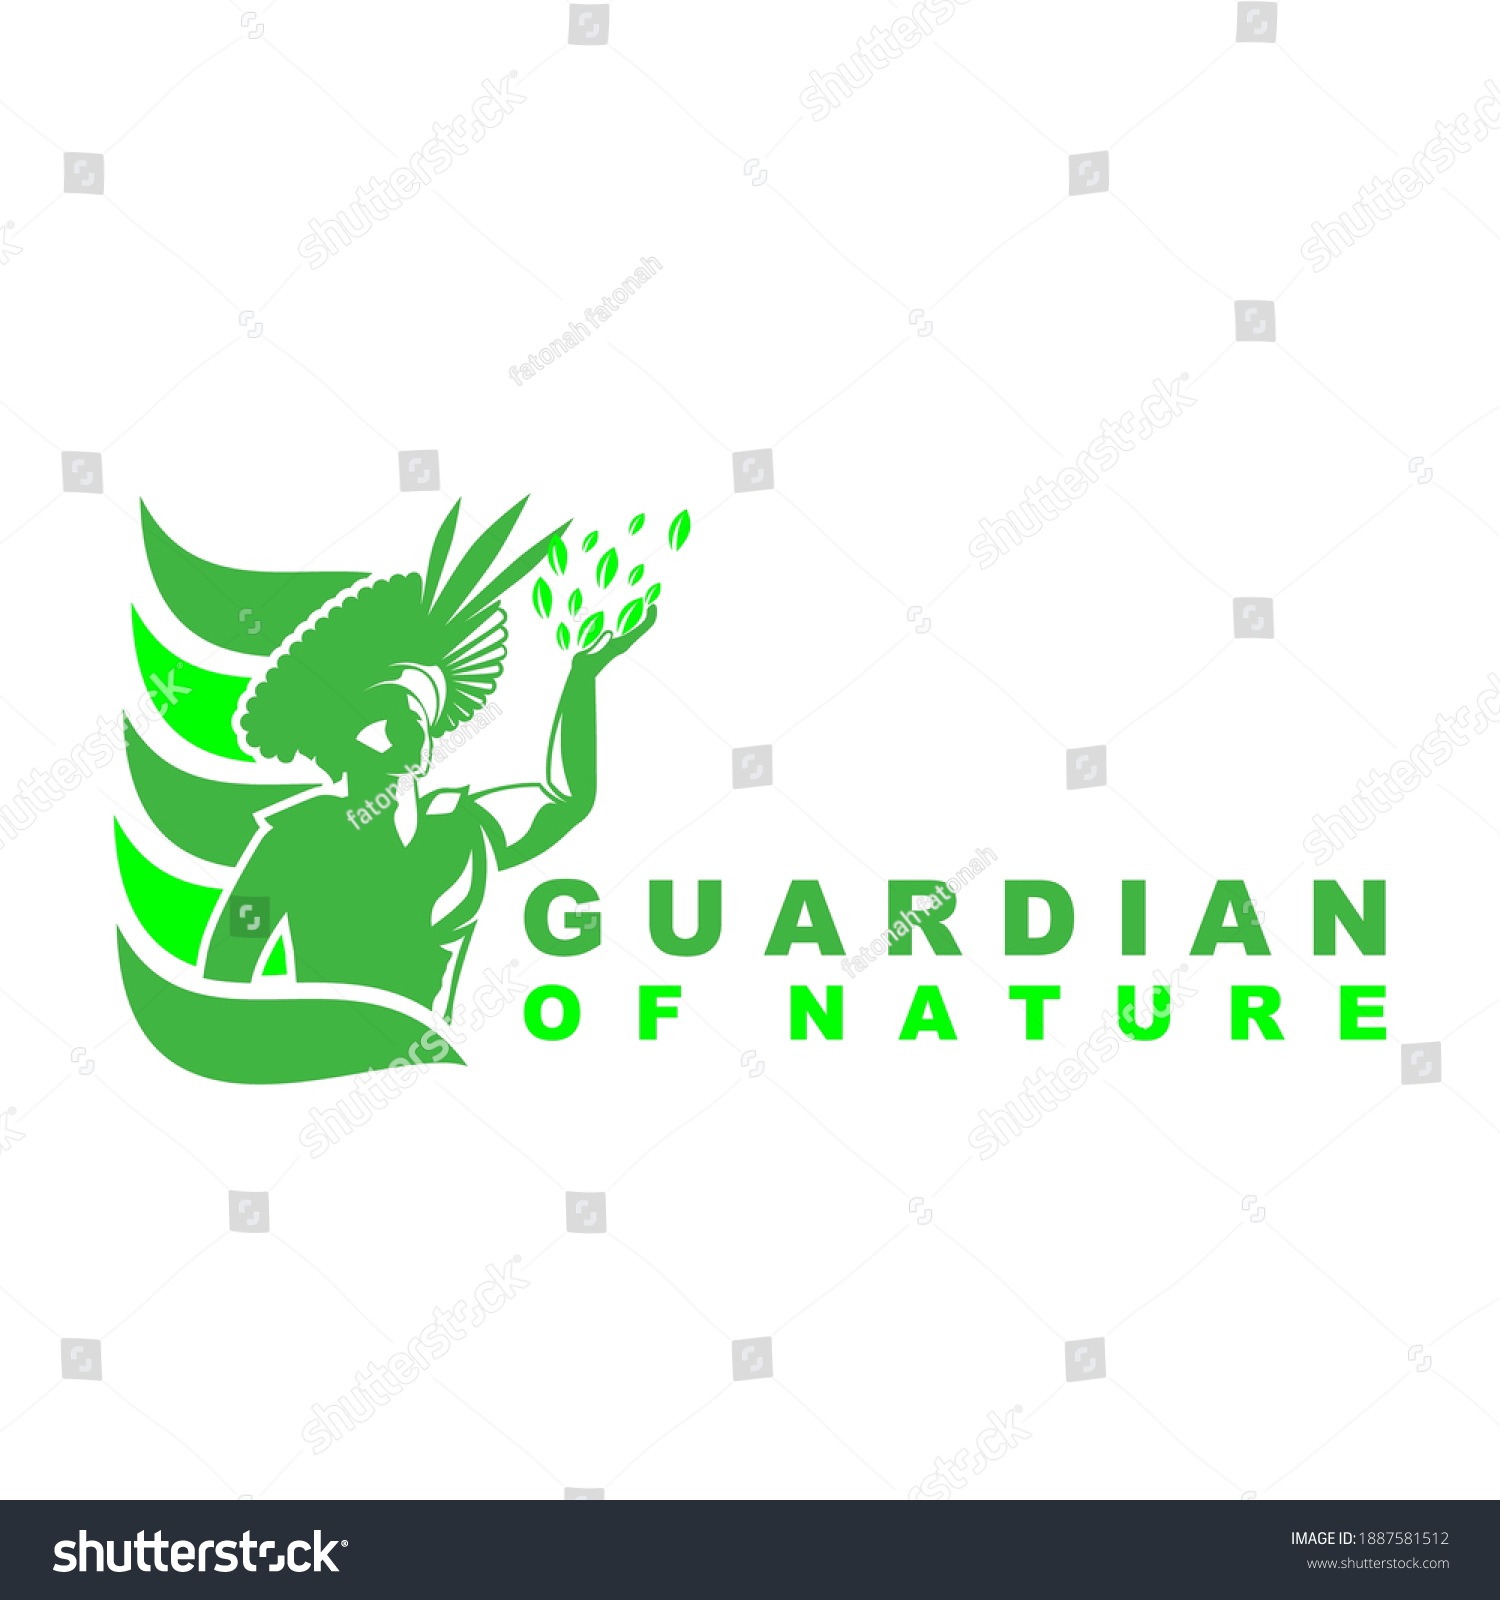 Nature Logo Design Vector Vector (Royalty Free) 1887581512